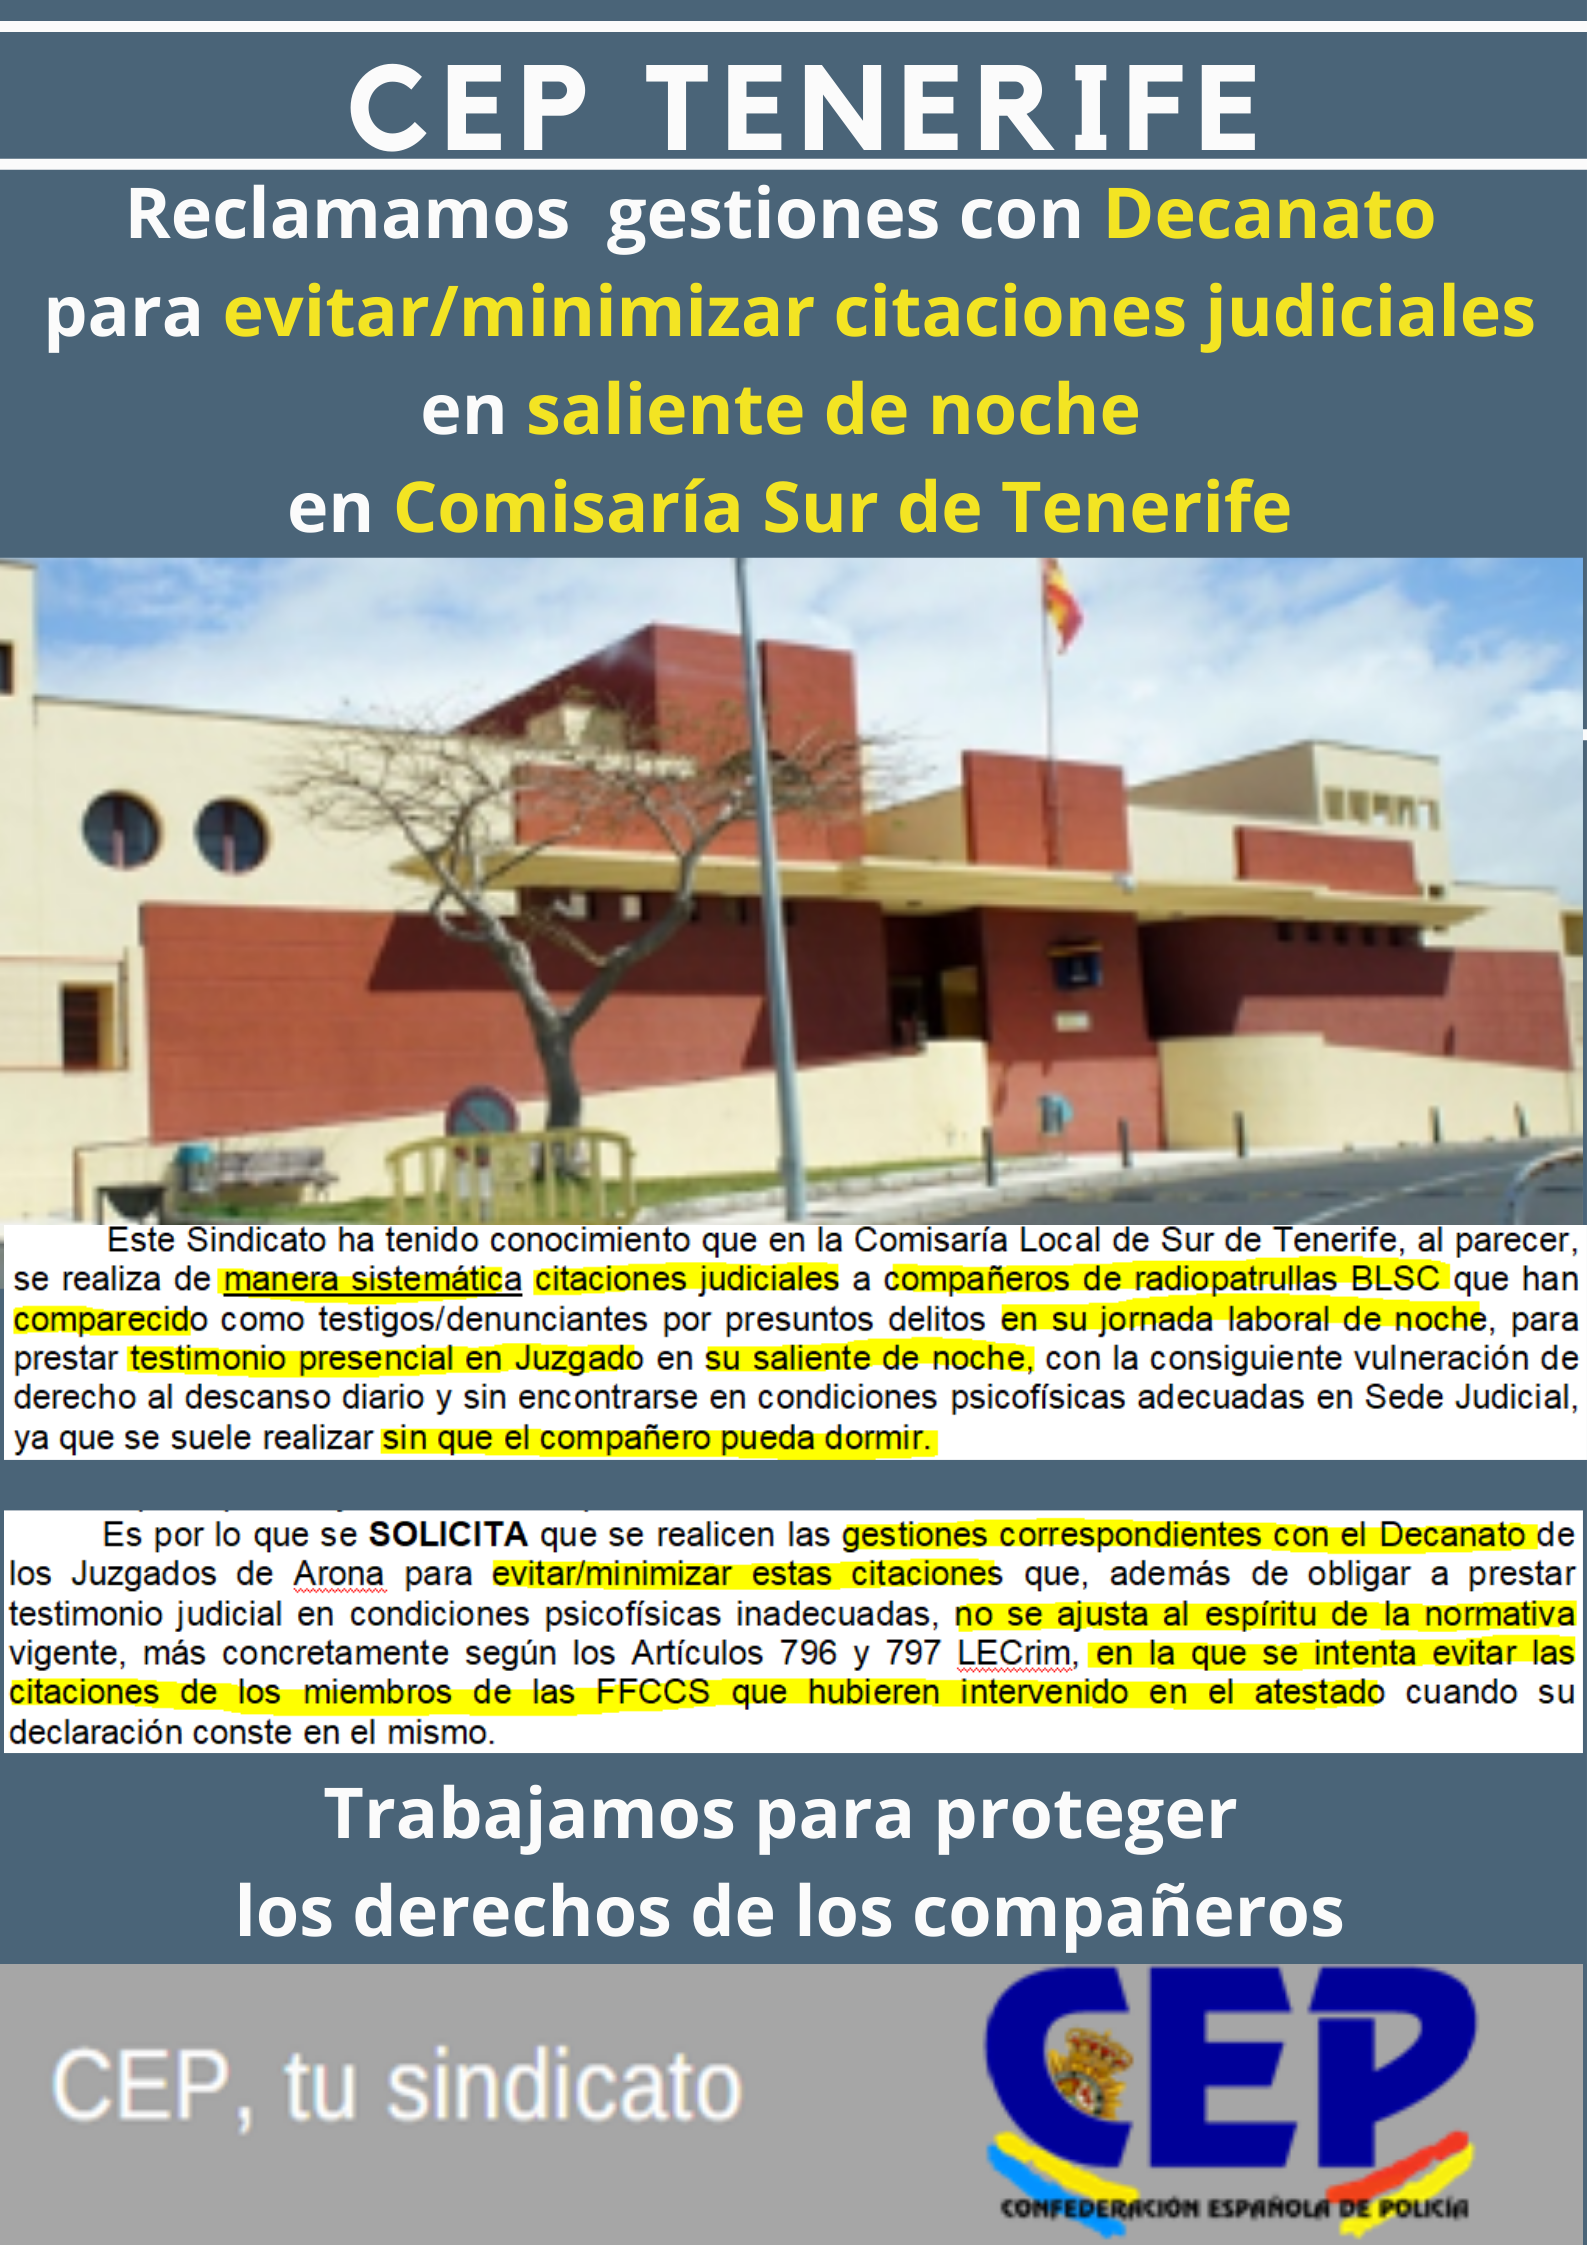 Reclamamos gestiones con decanato para evitar/minimizar citaciones judiciales en saliente noche radiopatrulla Sur de Tenerife